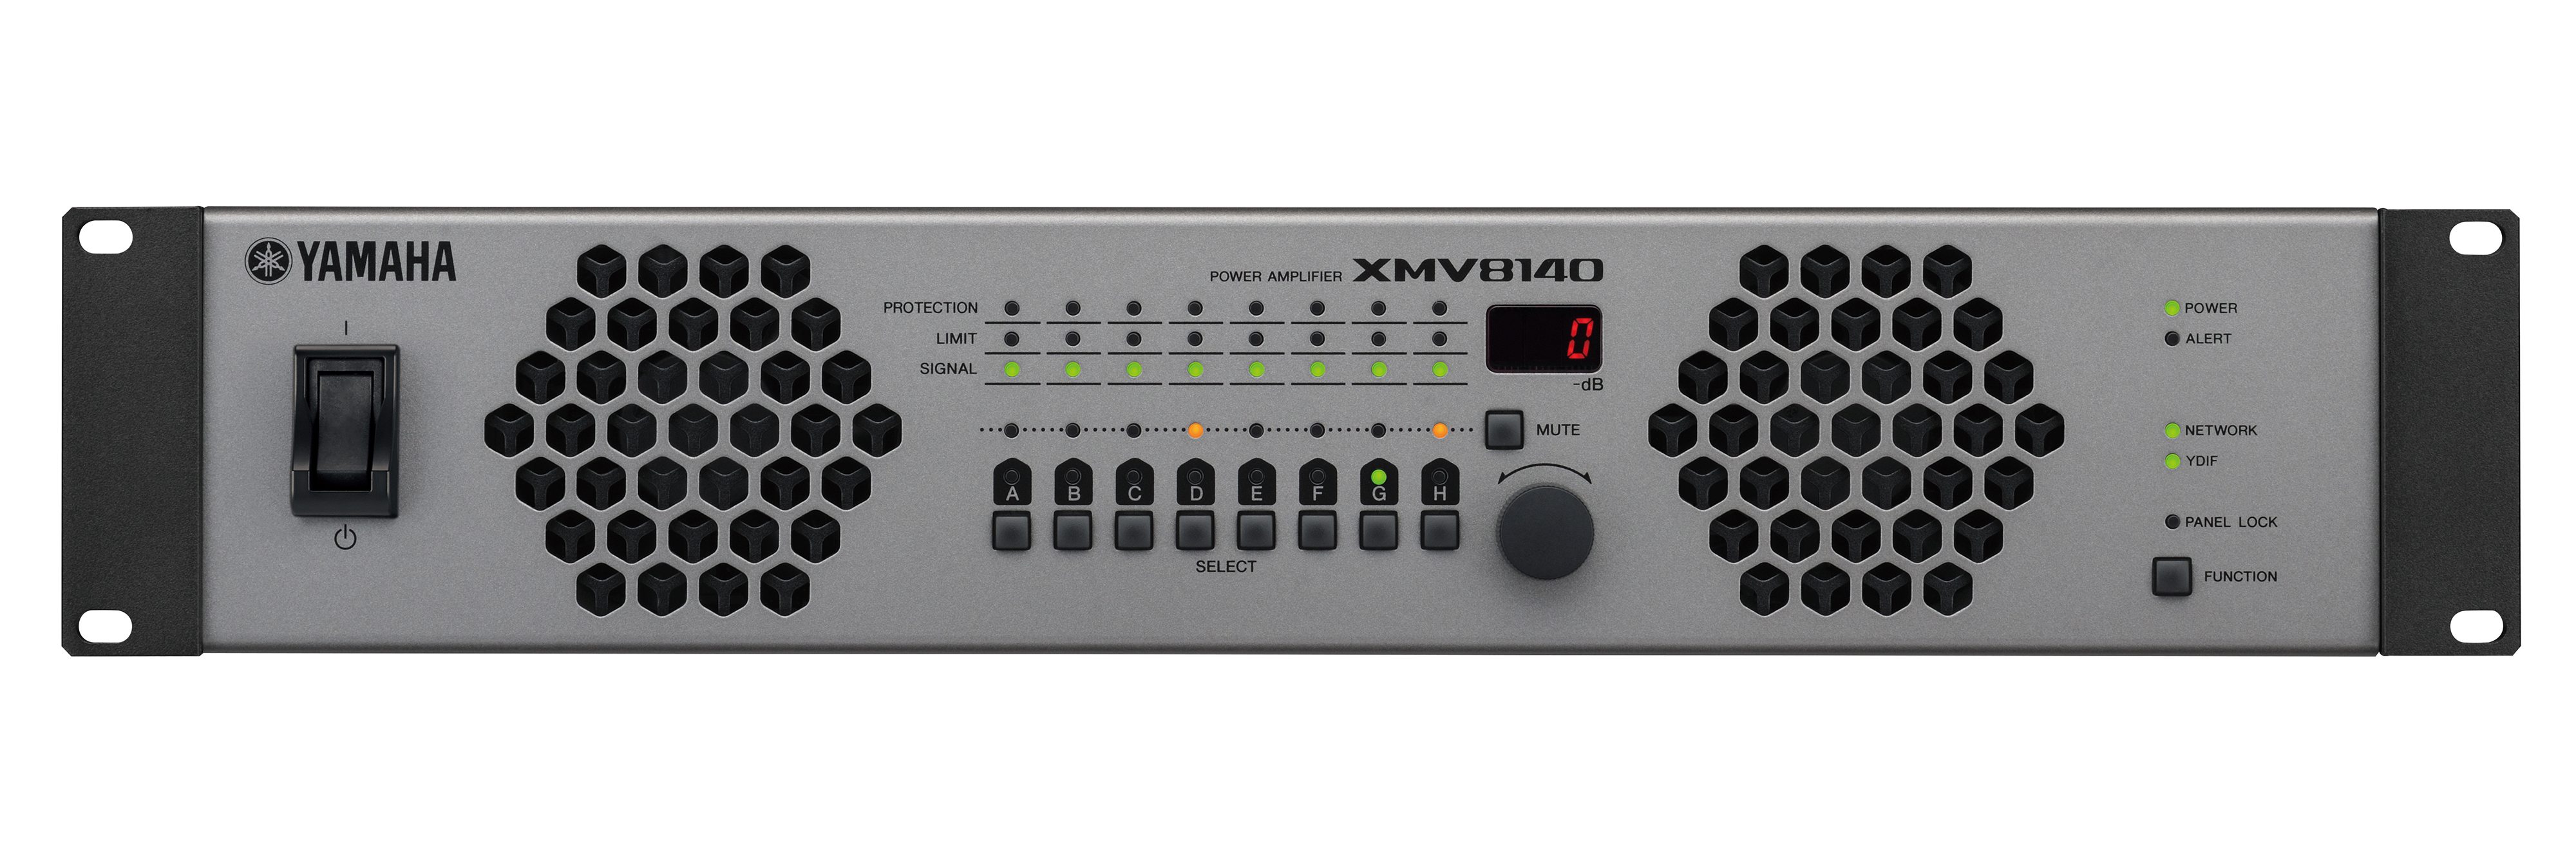 Yamaha XMV8140 - Многоканальный трансляционный усилитель мощности